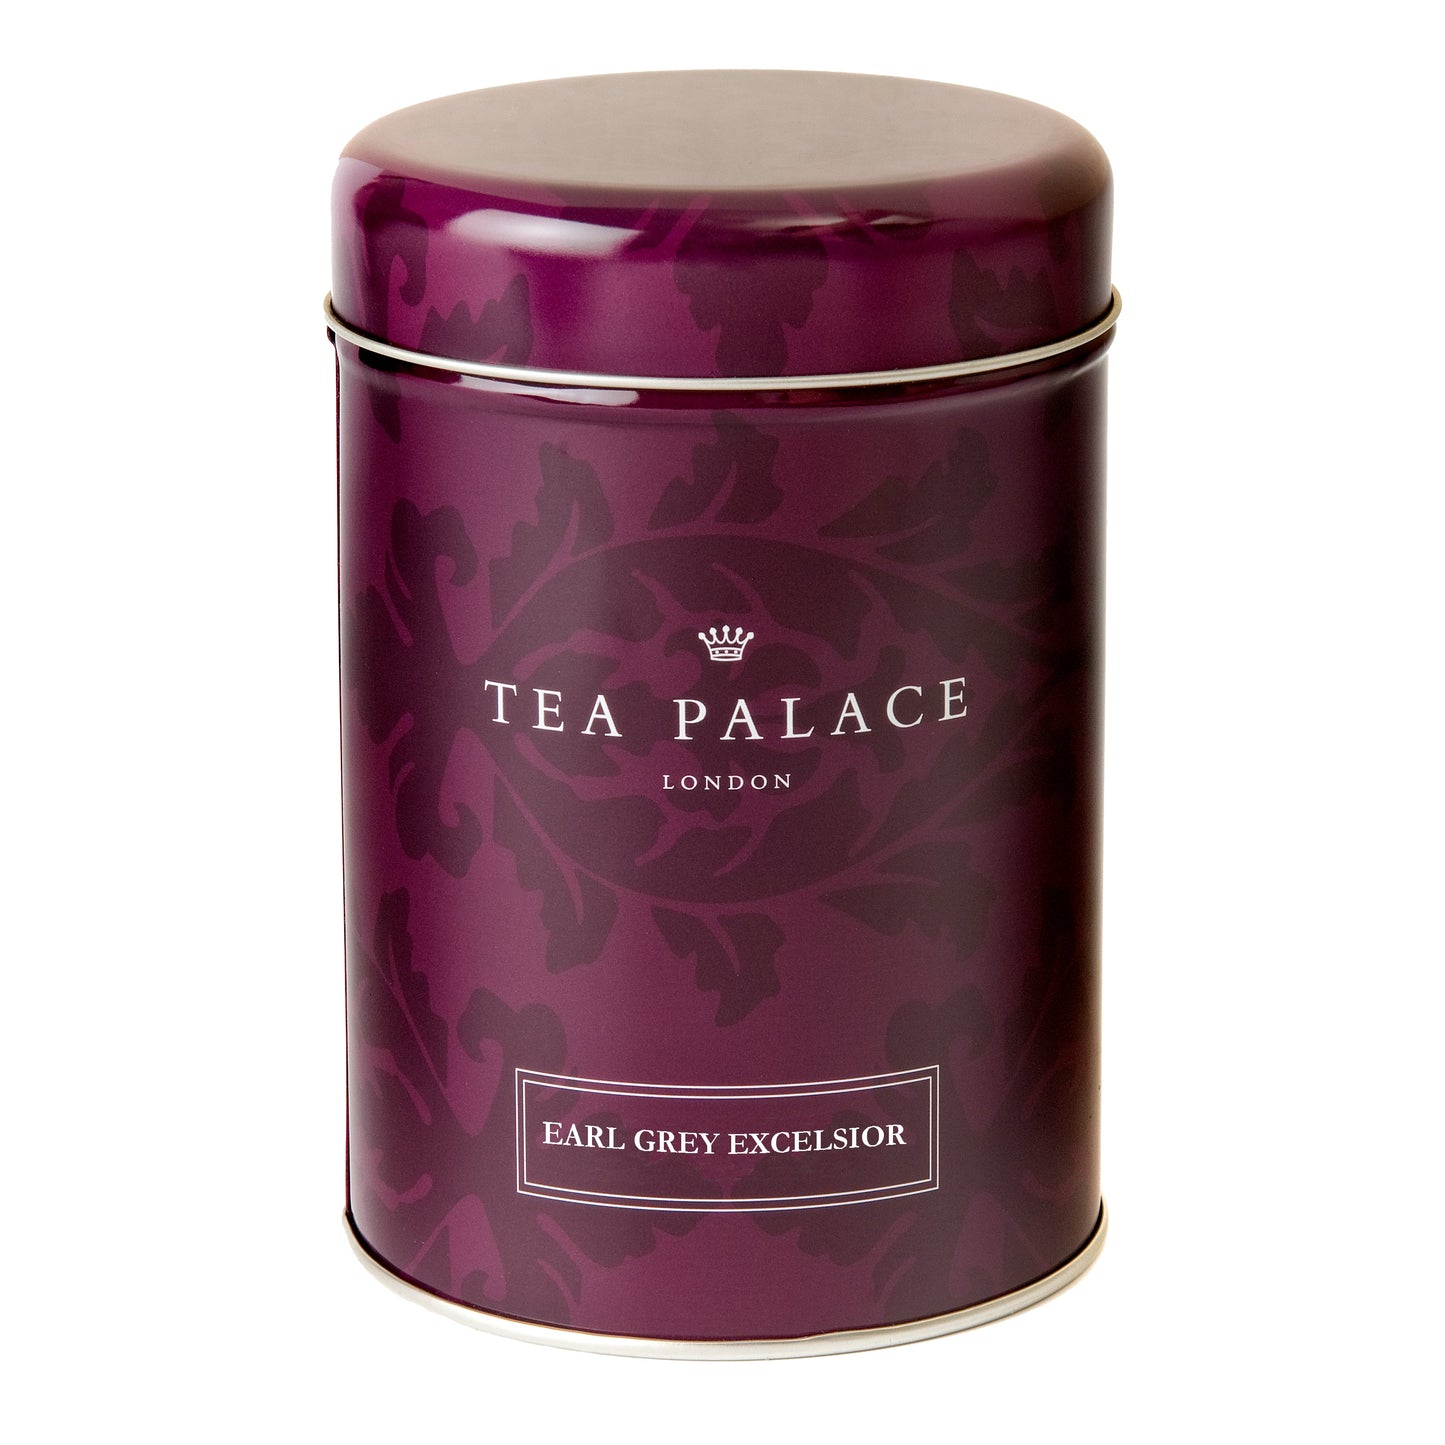 Tea Palace loose leaf Earl Grey tea caddy